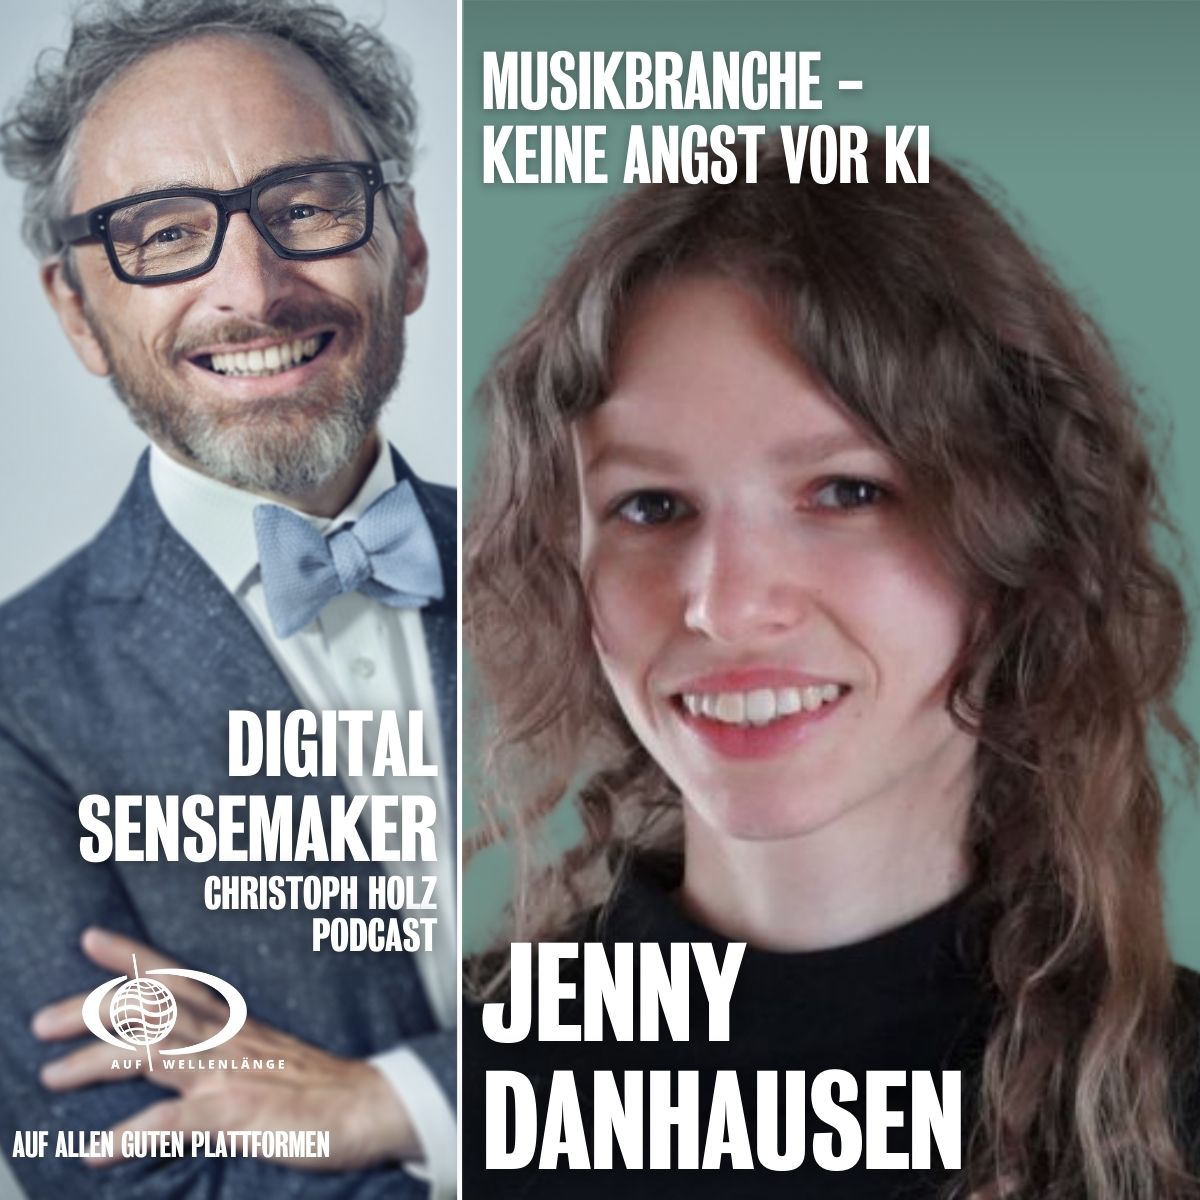 #133 "Musikbranche: Keine Angst vor KI" mit Jenny Danhausen, Musiklehrerin und globale Unternehmerin